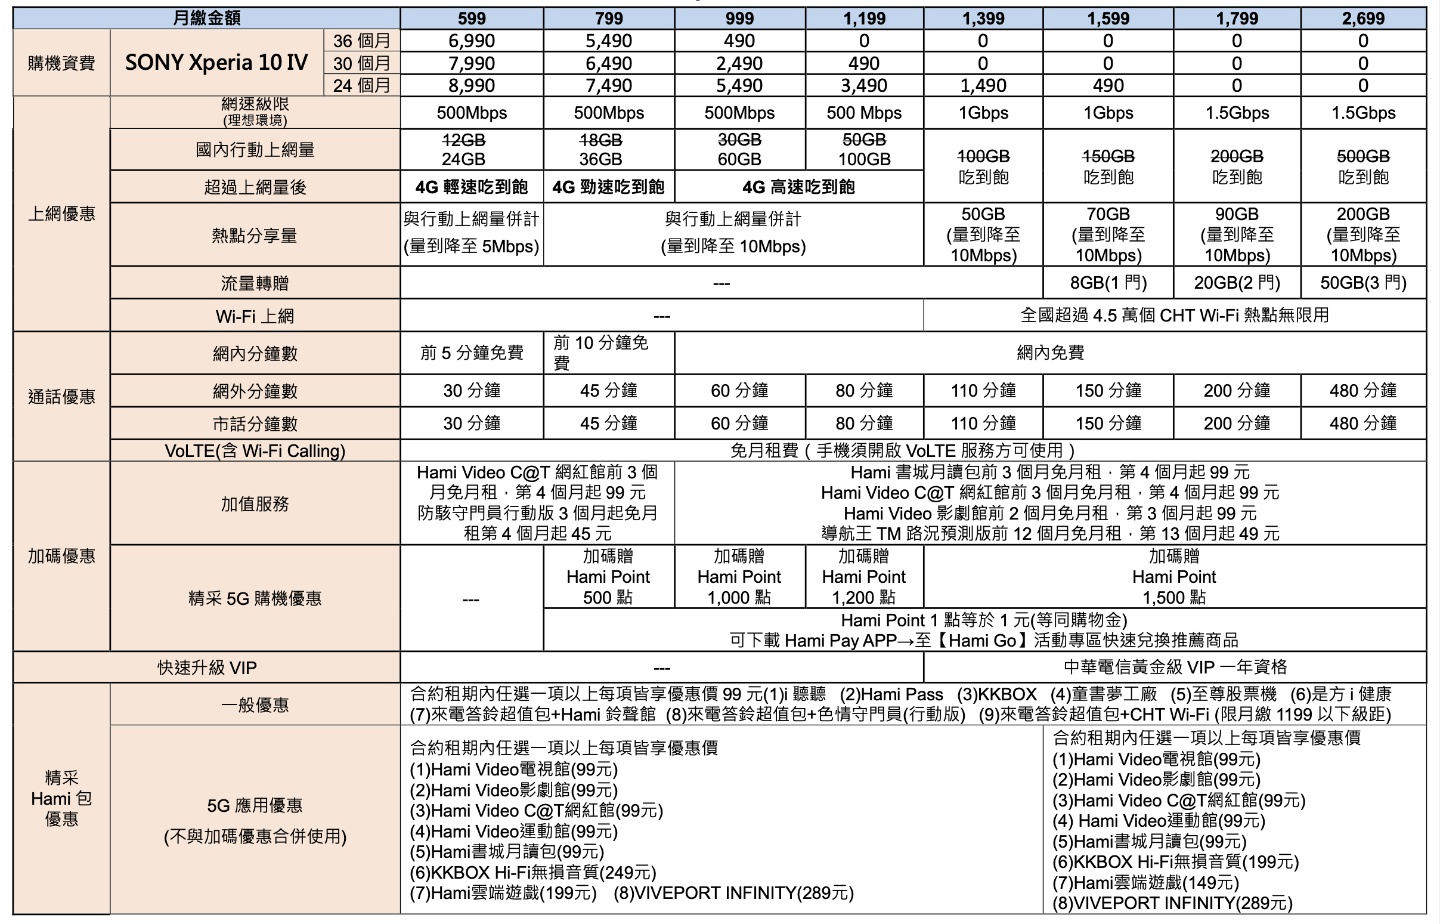 小巧精幹～Sony Xperia 10 IV，攜手台灣三大電信推出優惠資費方案